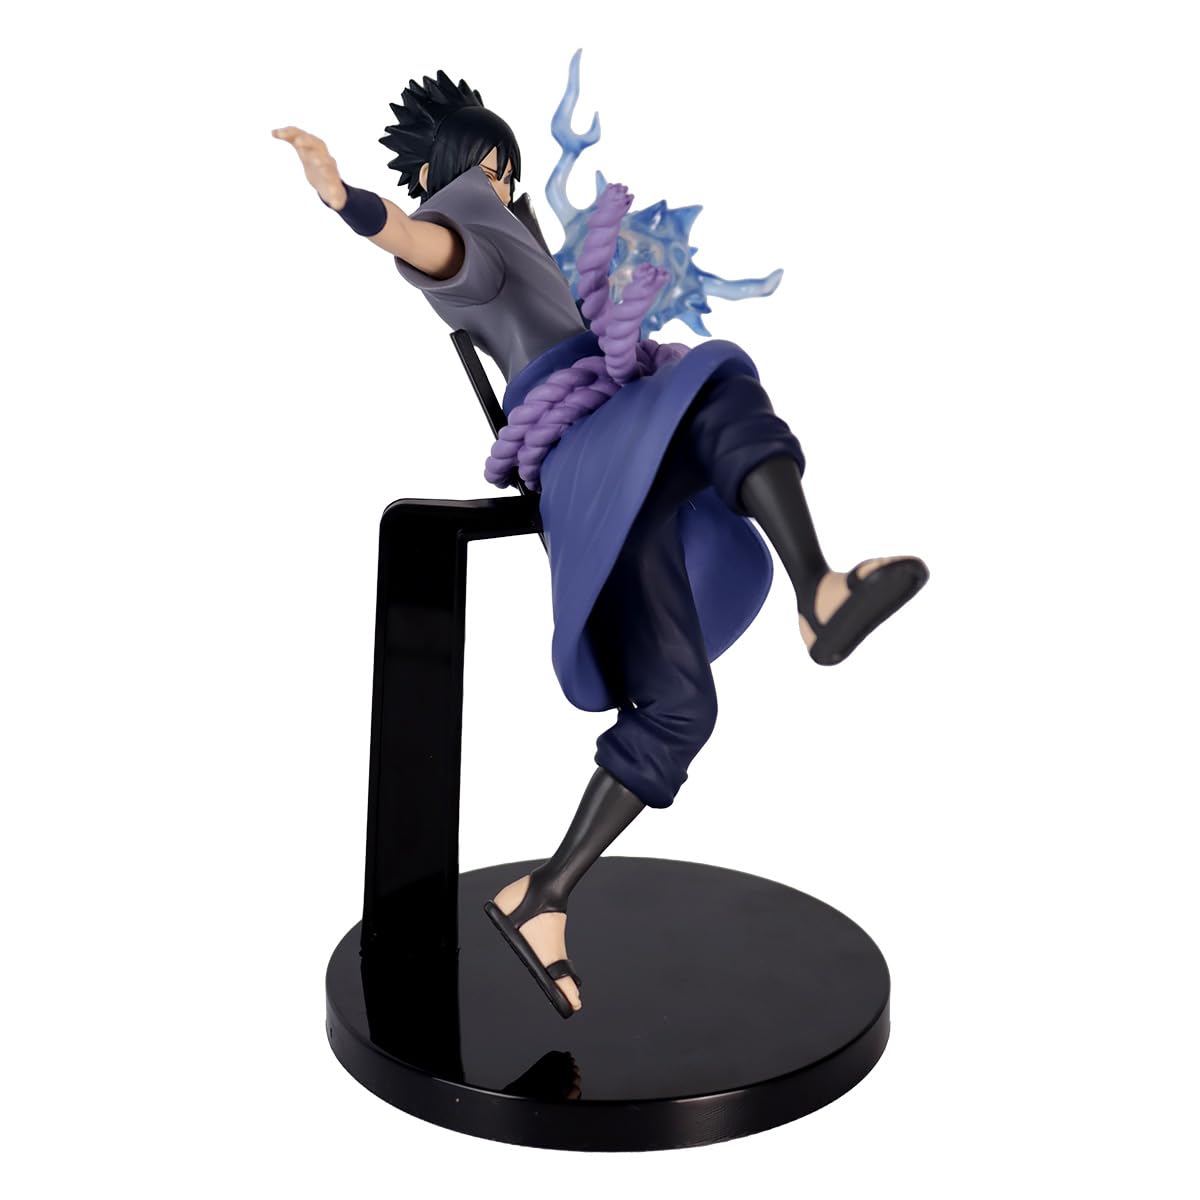 Banpresto - Figurine Naruto - Sasuke Uchiha Effectreme 14cm - 4983164192896